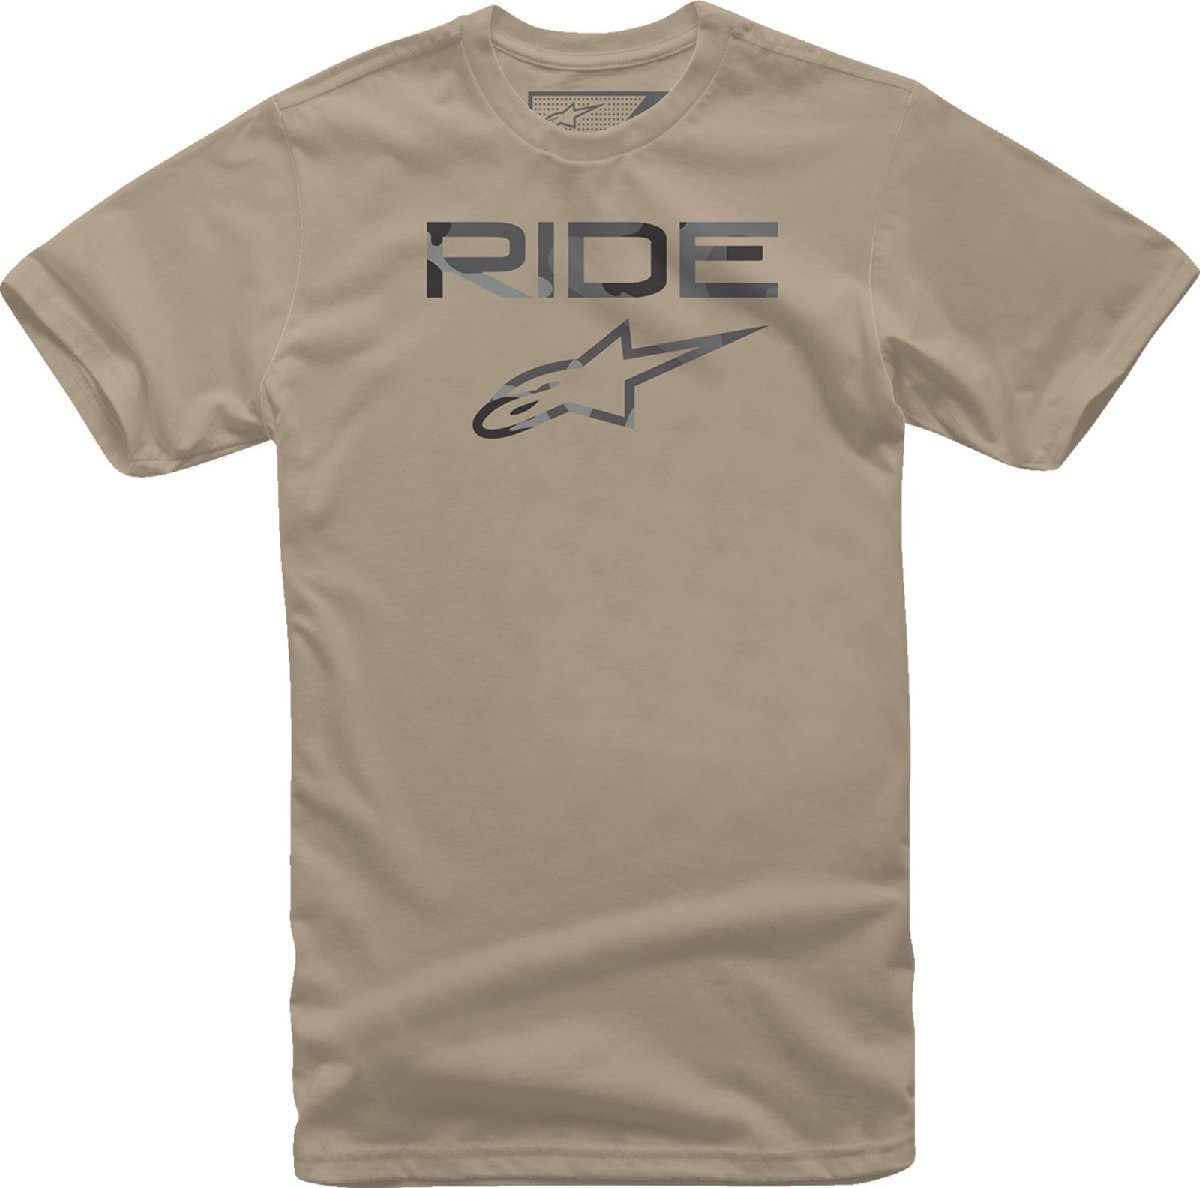 2XLサイズ - カモ サンド - ALPINESTARS アルパインスターズ Ride 2.0 Tシャツ_画像1